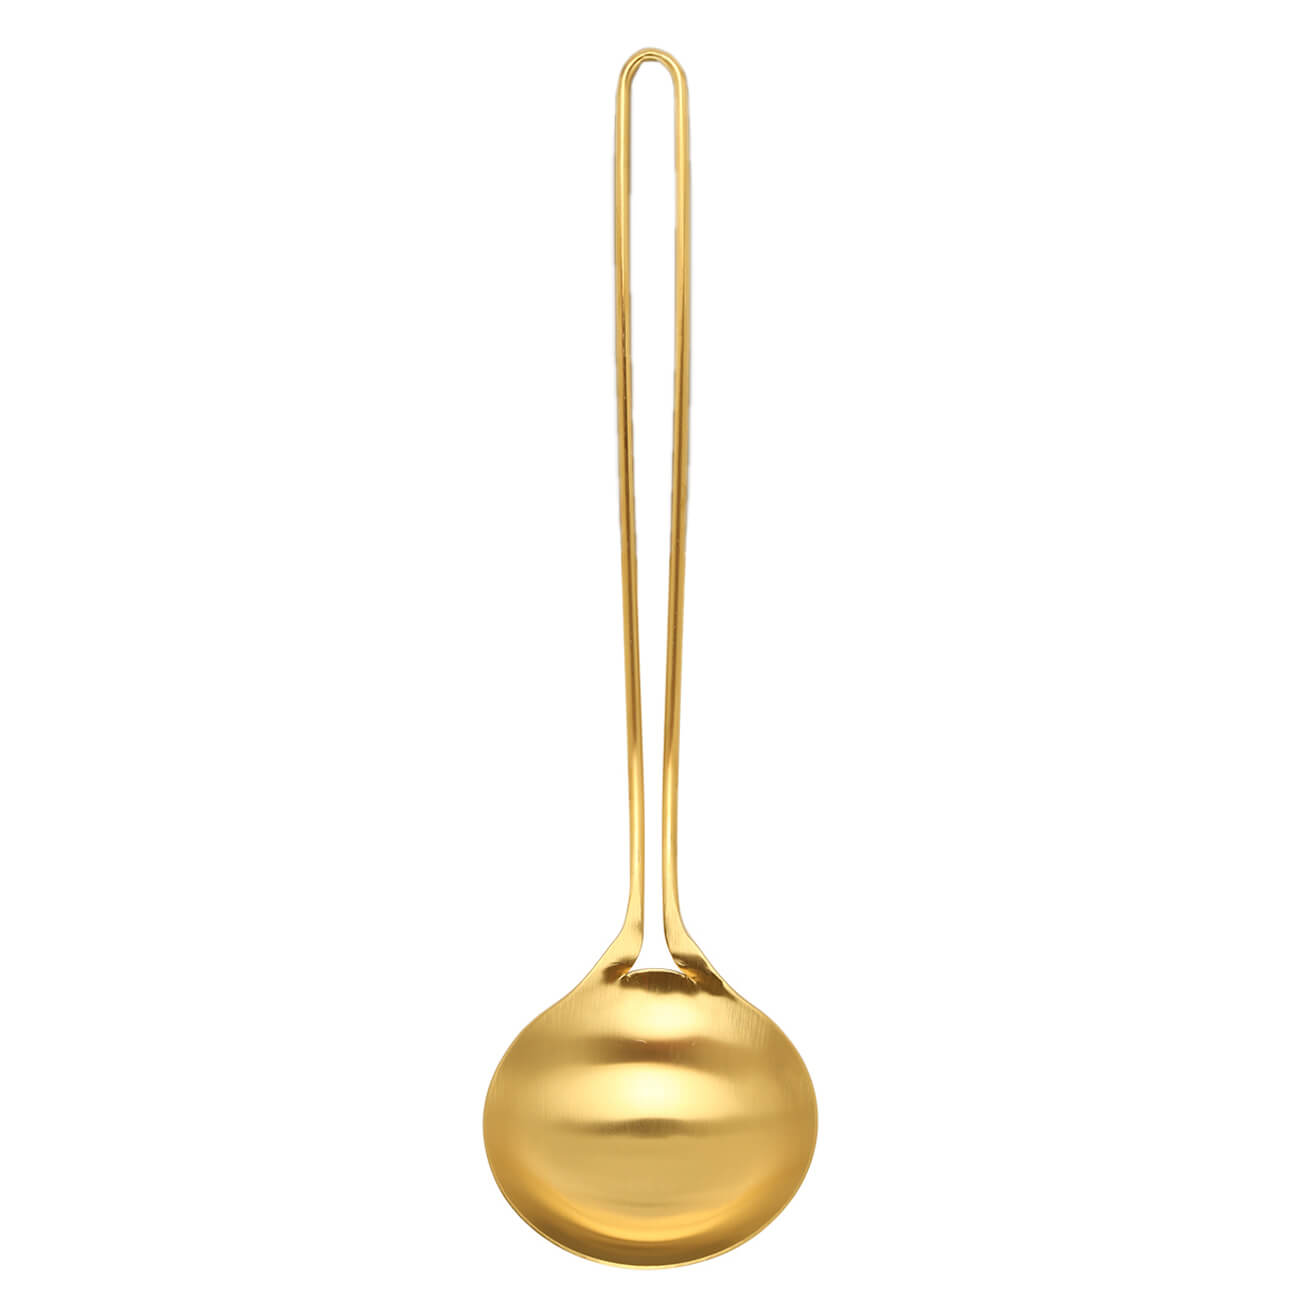 Половник, 35 см, сталь, золотистый, Device gold изображение № 1